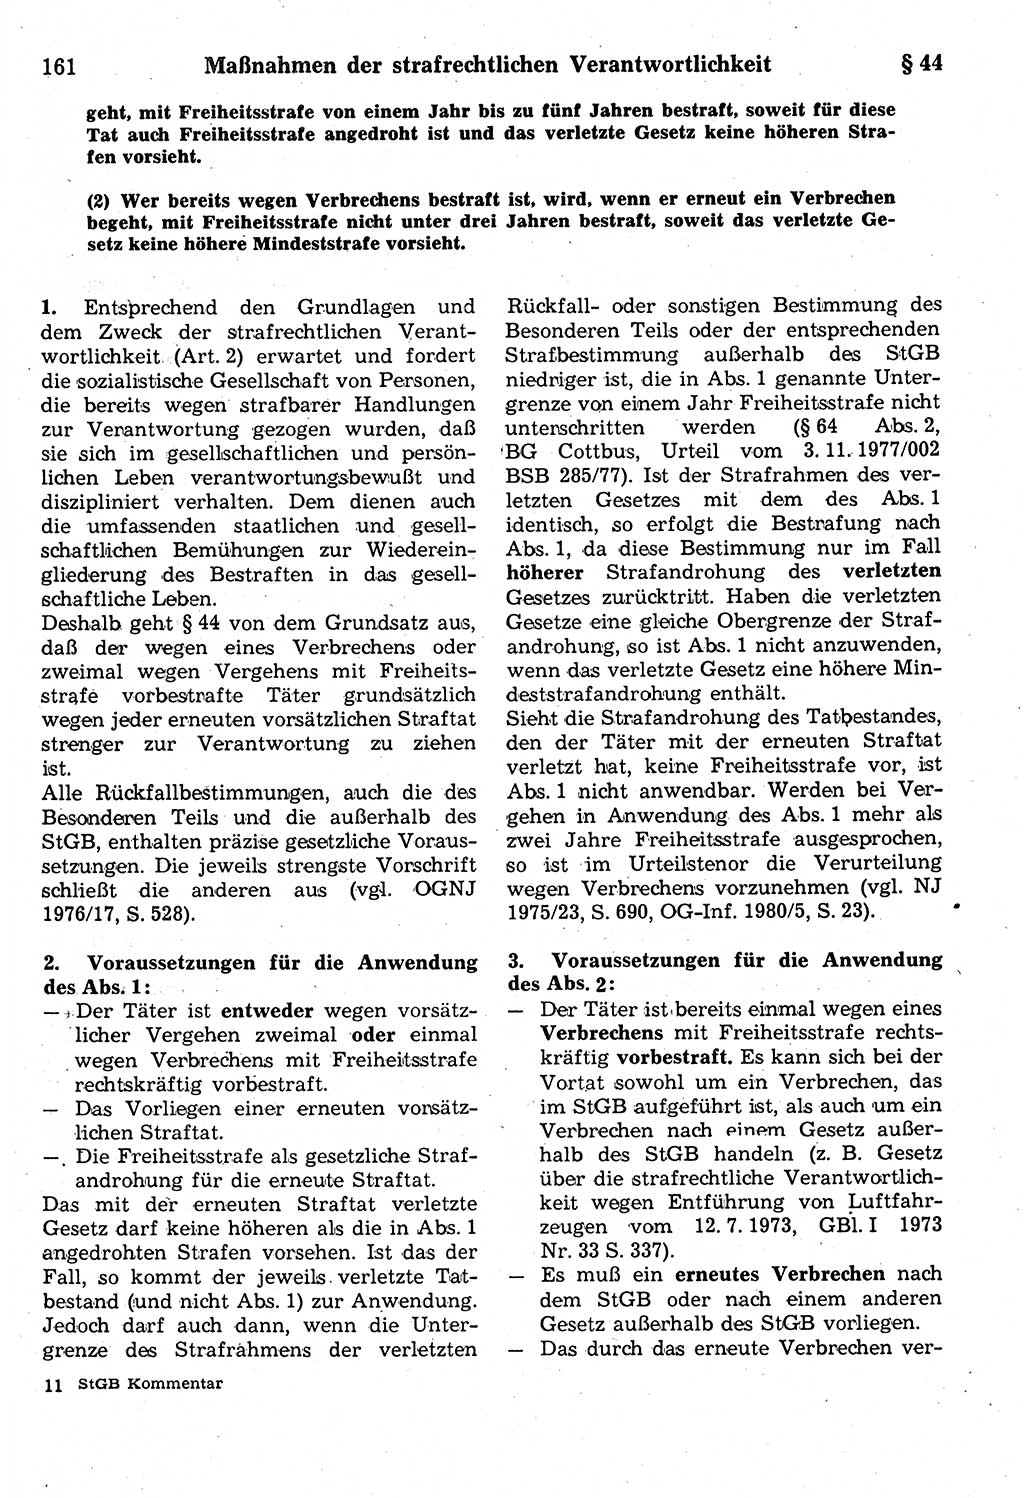 Strafrecht der Deutschen Demokratischen Republik (DDR), Kommentar zum Strafgesetzbuch (StGB) 1987, Seite 161 (Strafr. DDR Komm. StGB 1987, S. 161)